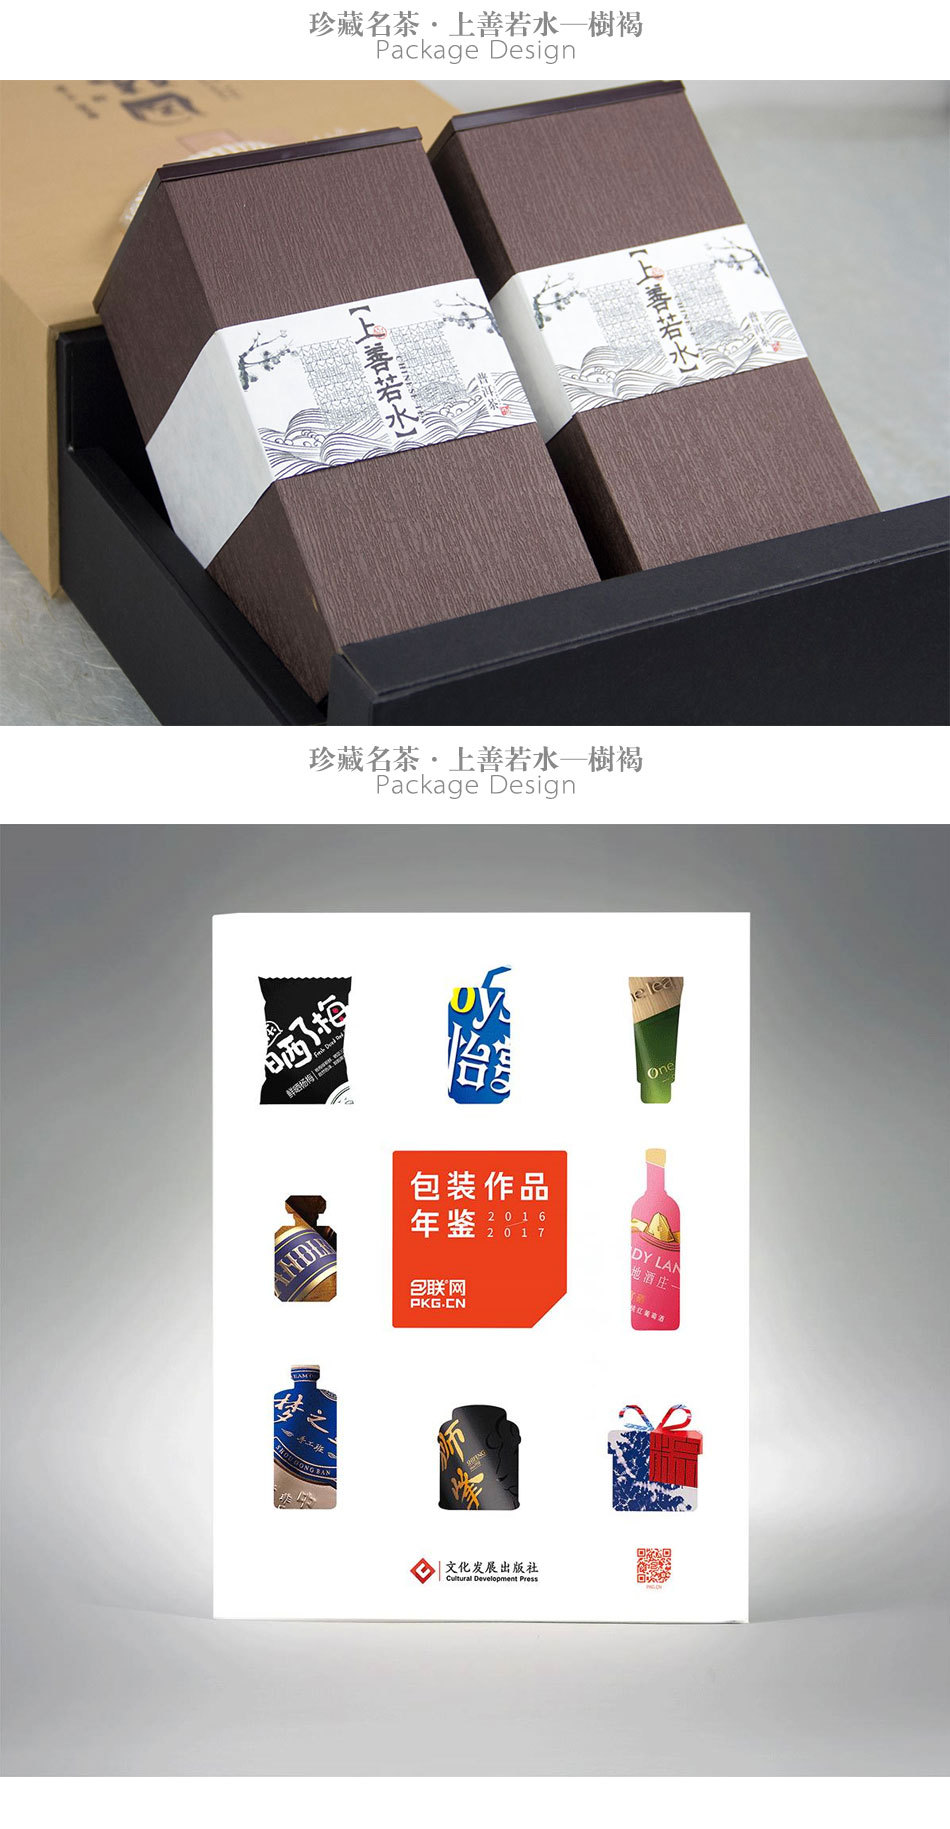 '珍藏茗茶·上善若水'系列包装设计 收录在包联网《包装作品年鉴2016-2017》图5